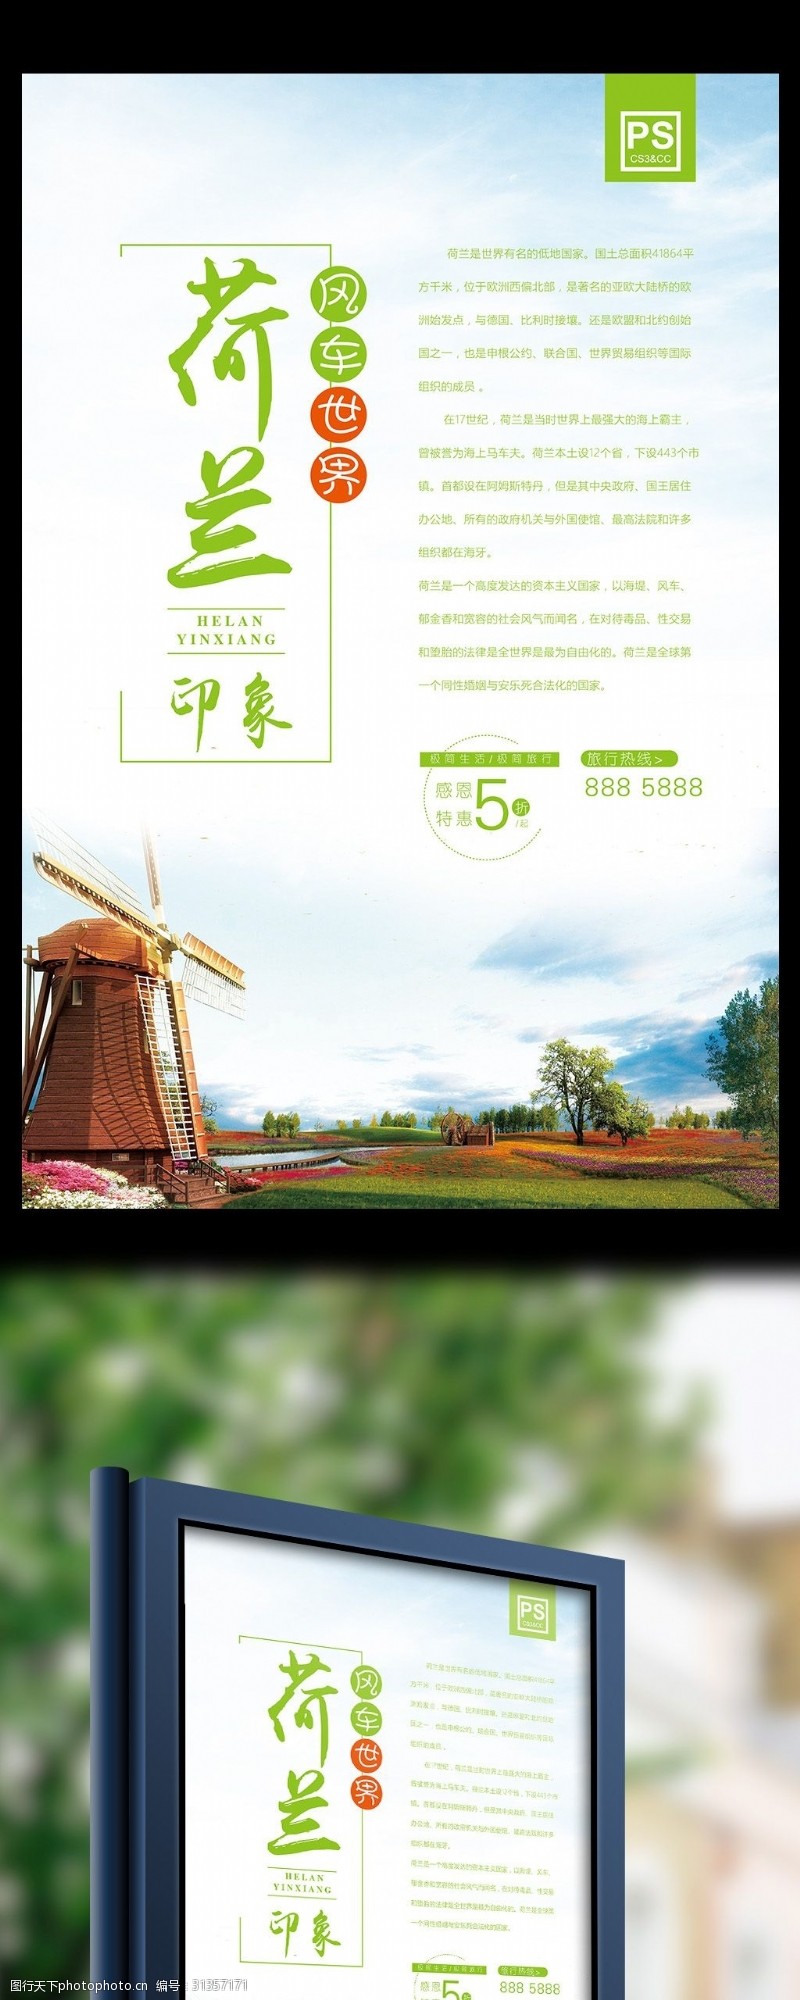 风车小镇荷兰欧洲旅游促销海报